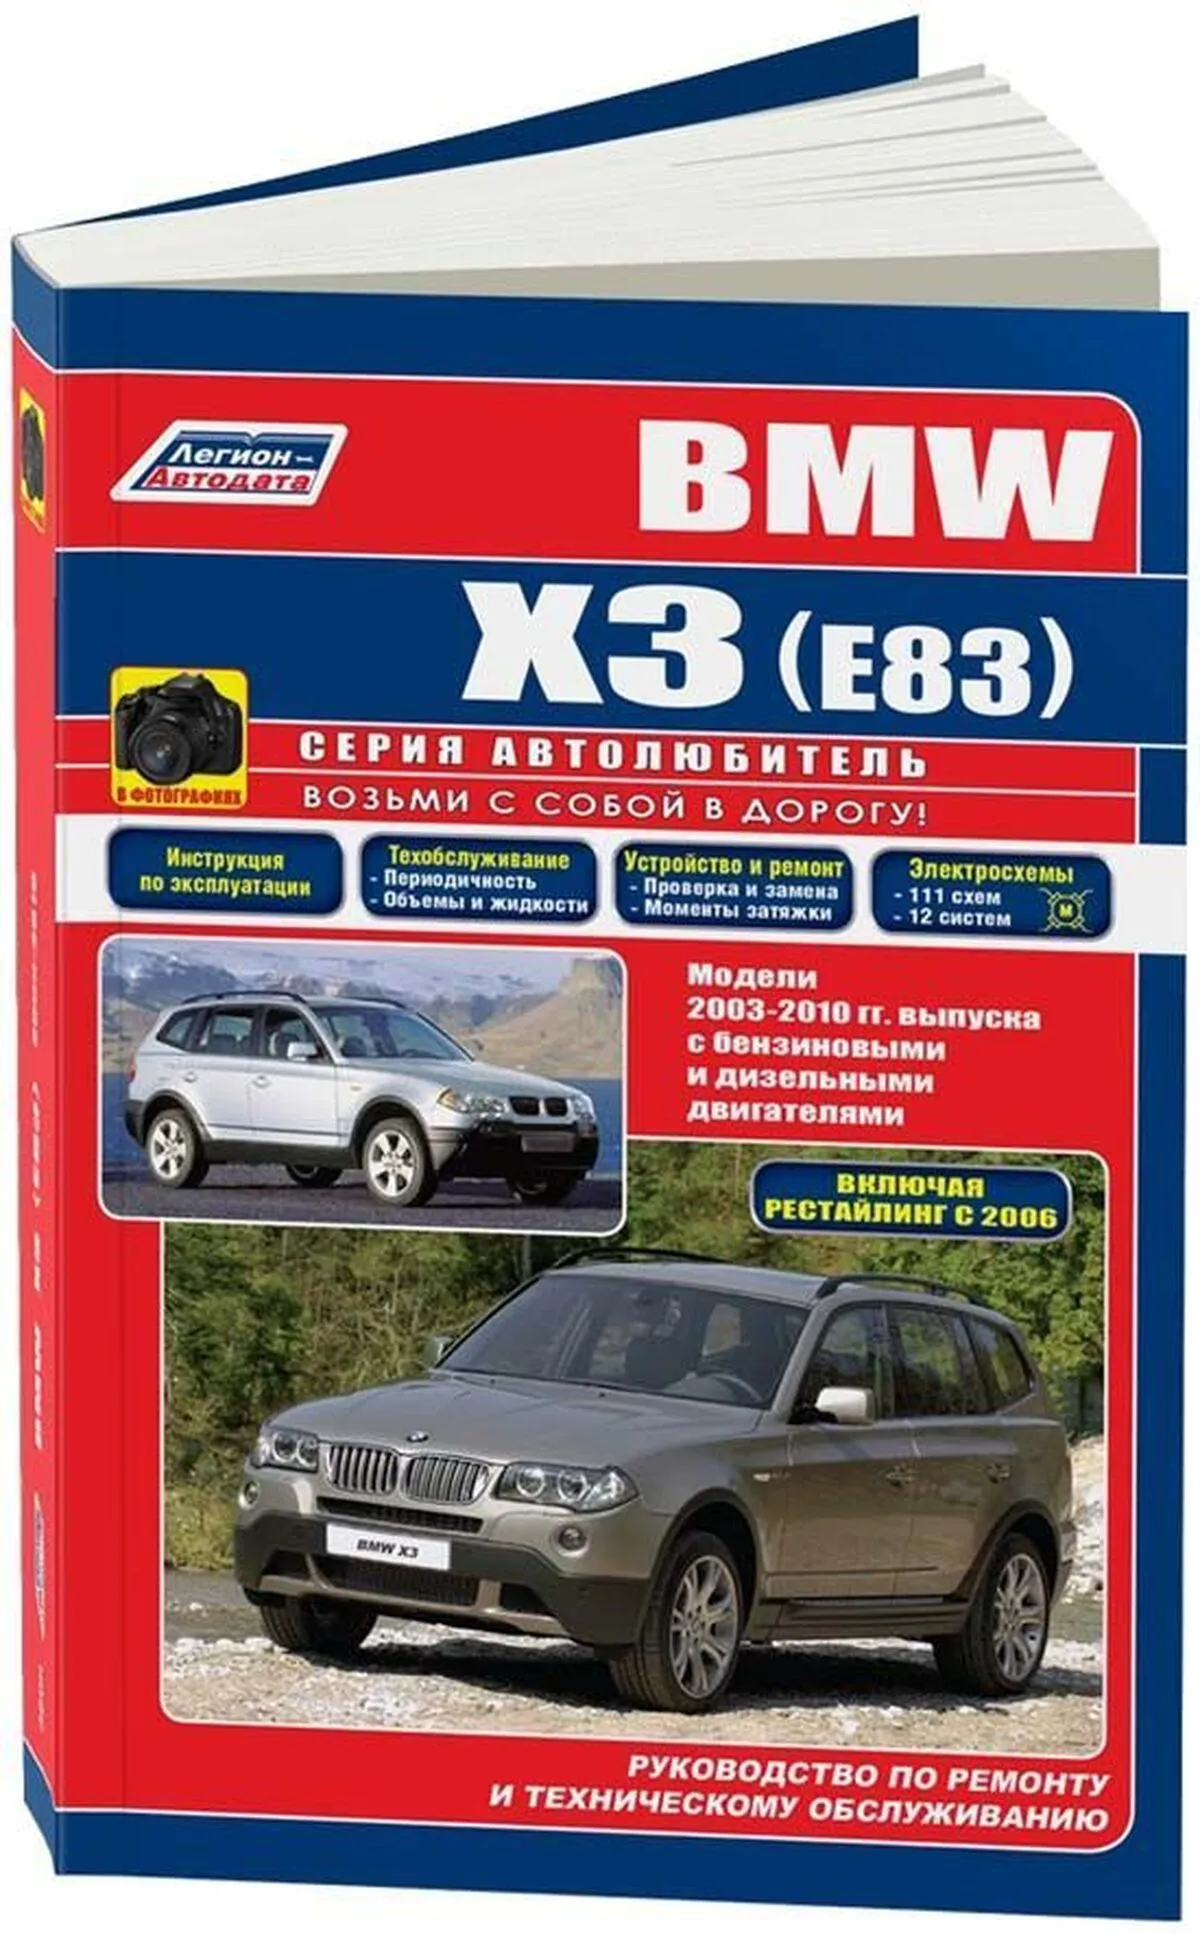 Книга: BMW X3 (E83) (б , д) 2003-2010 г.в. рем., экспл., то, сер.АВТОЛ. | Легион-Aвтодата